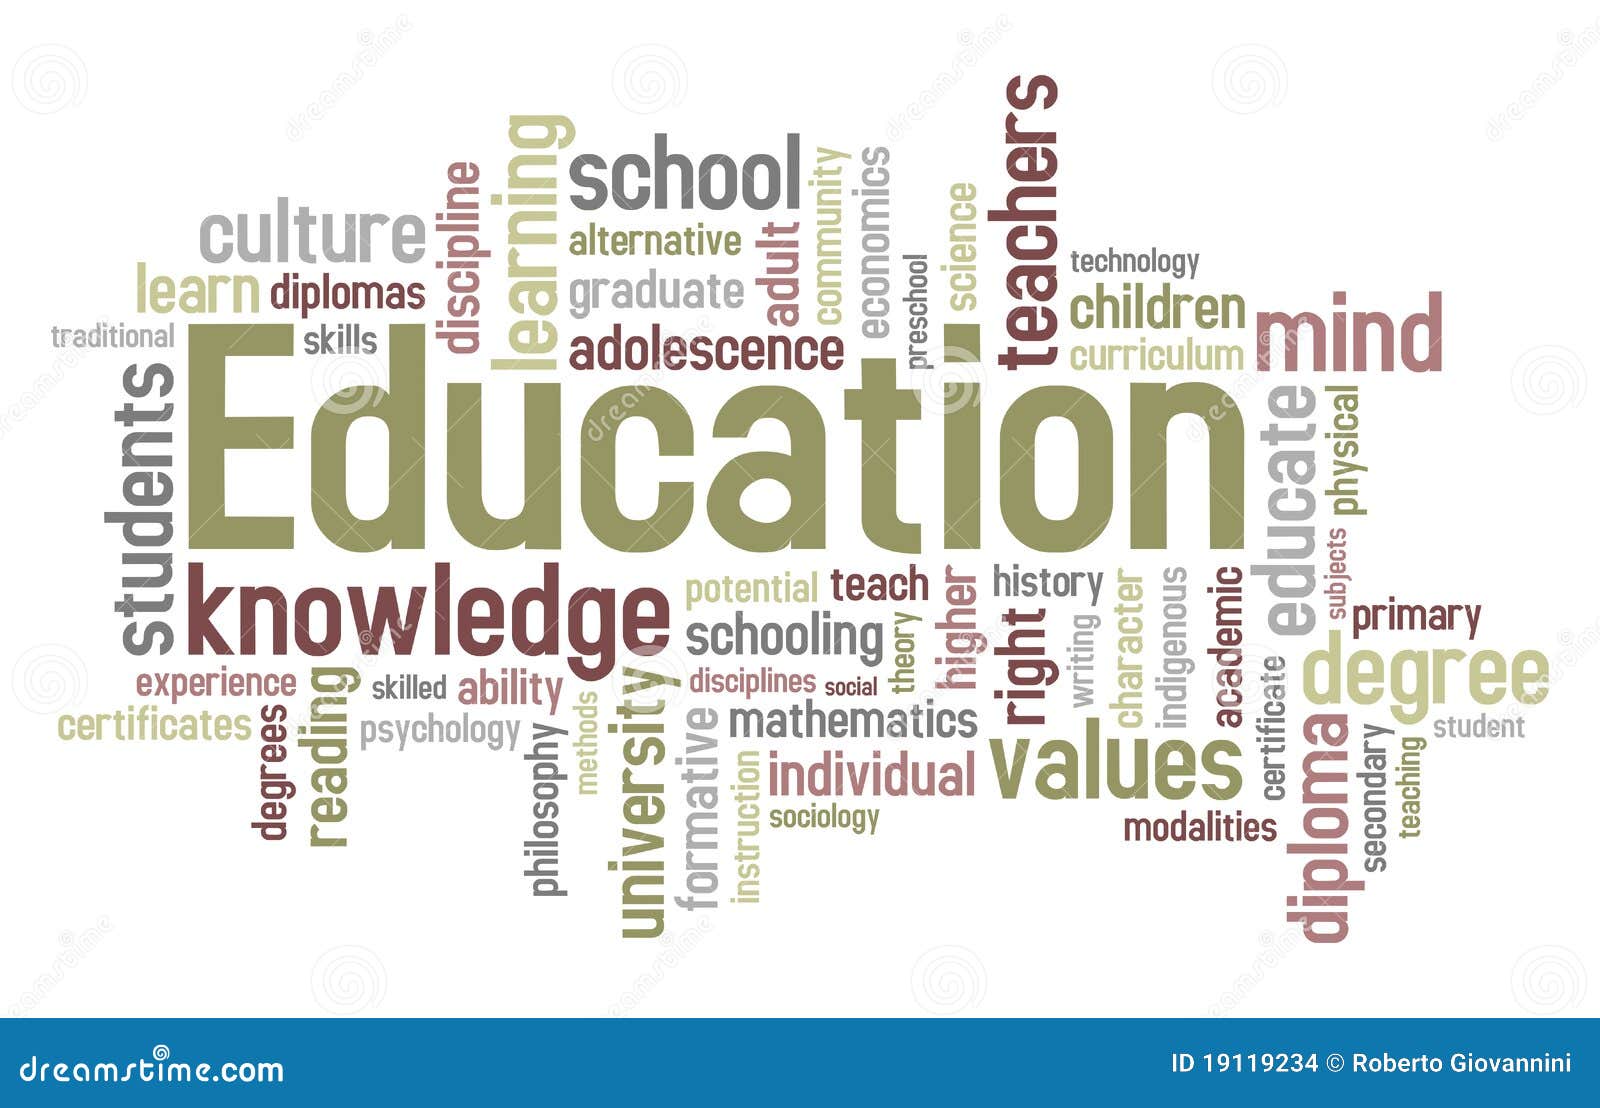 education word cloud